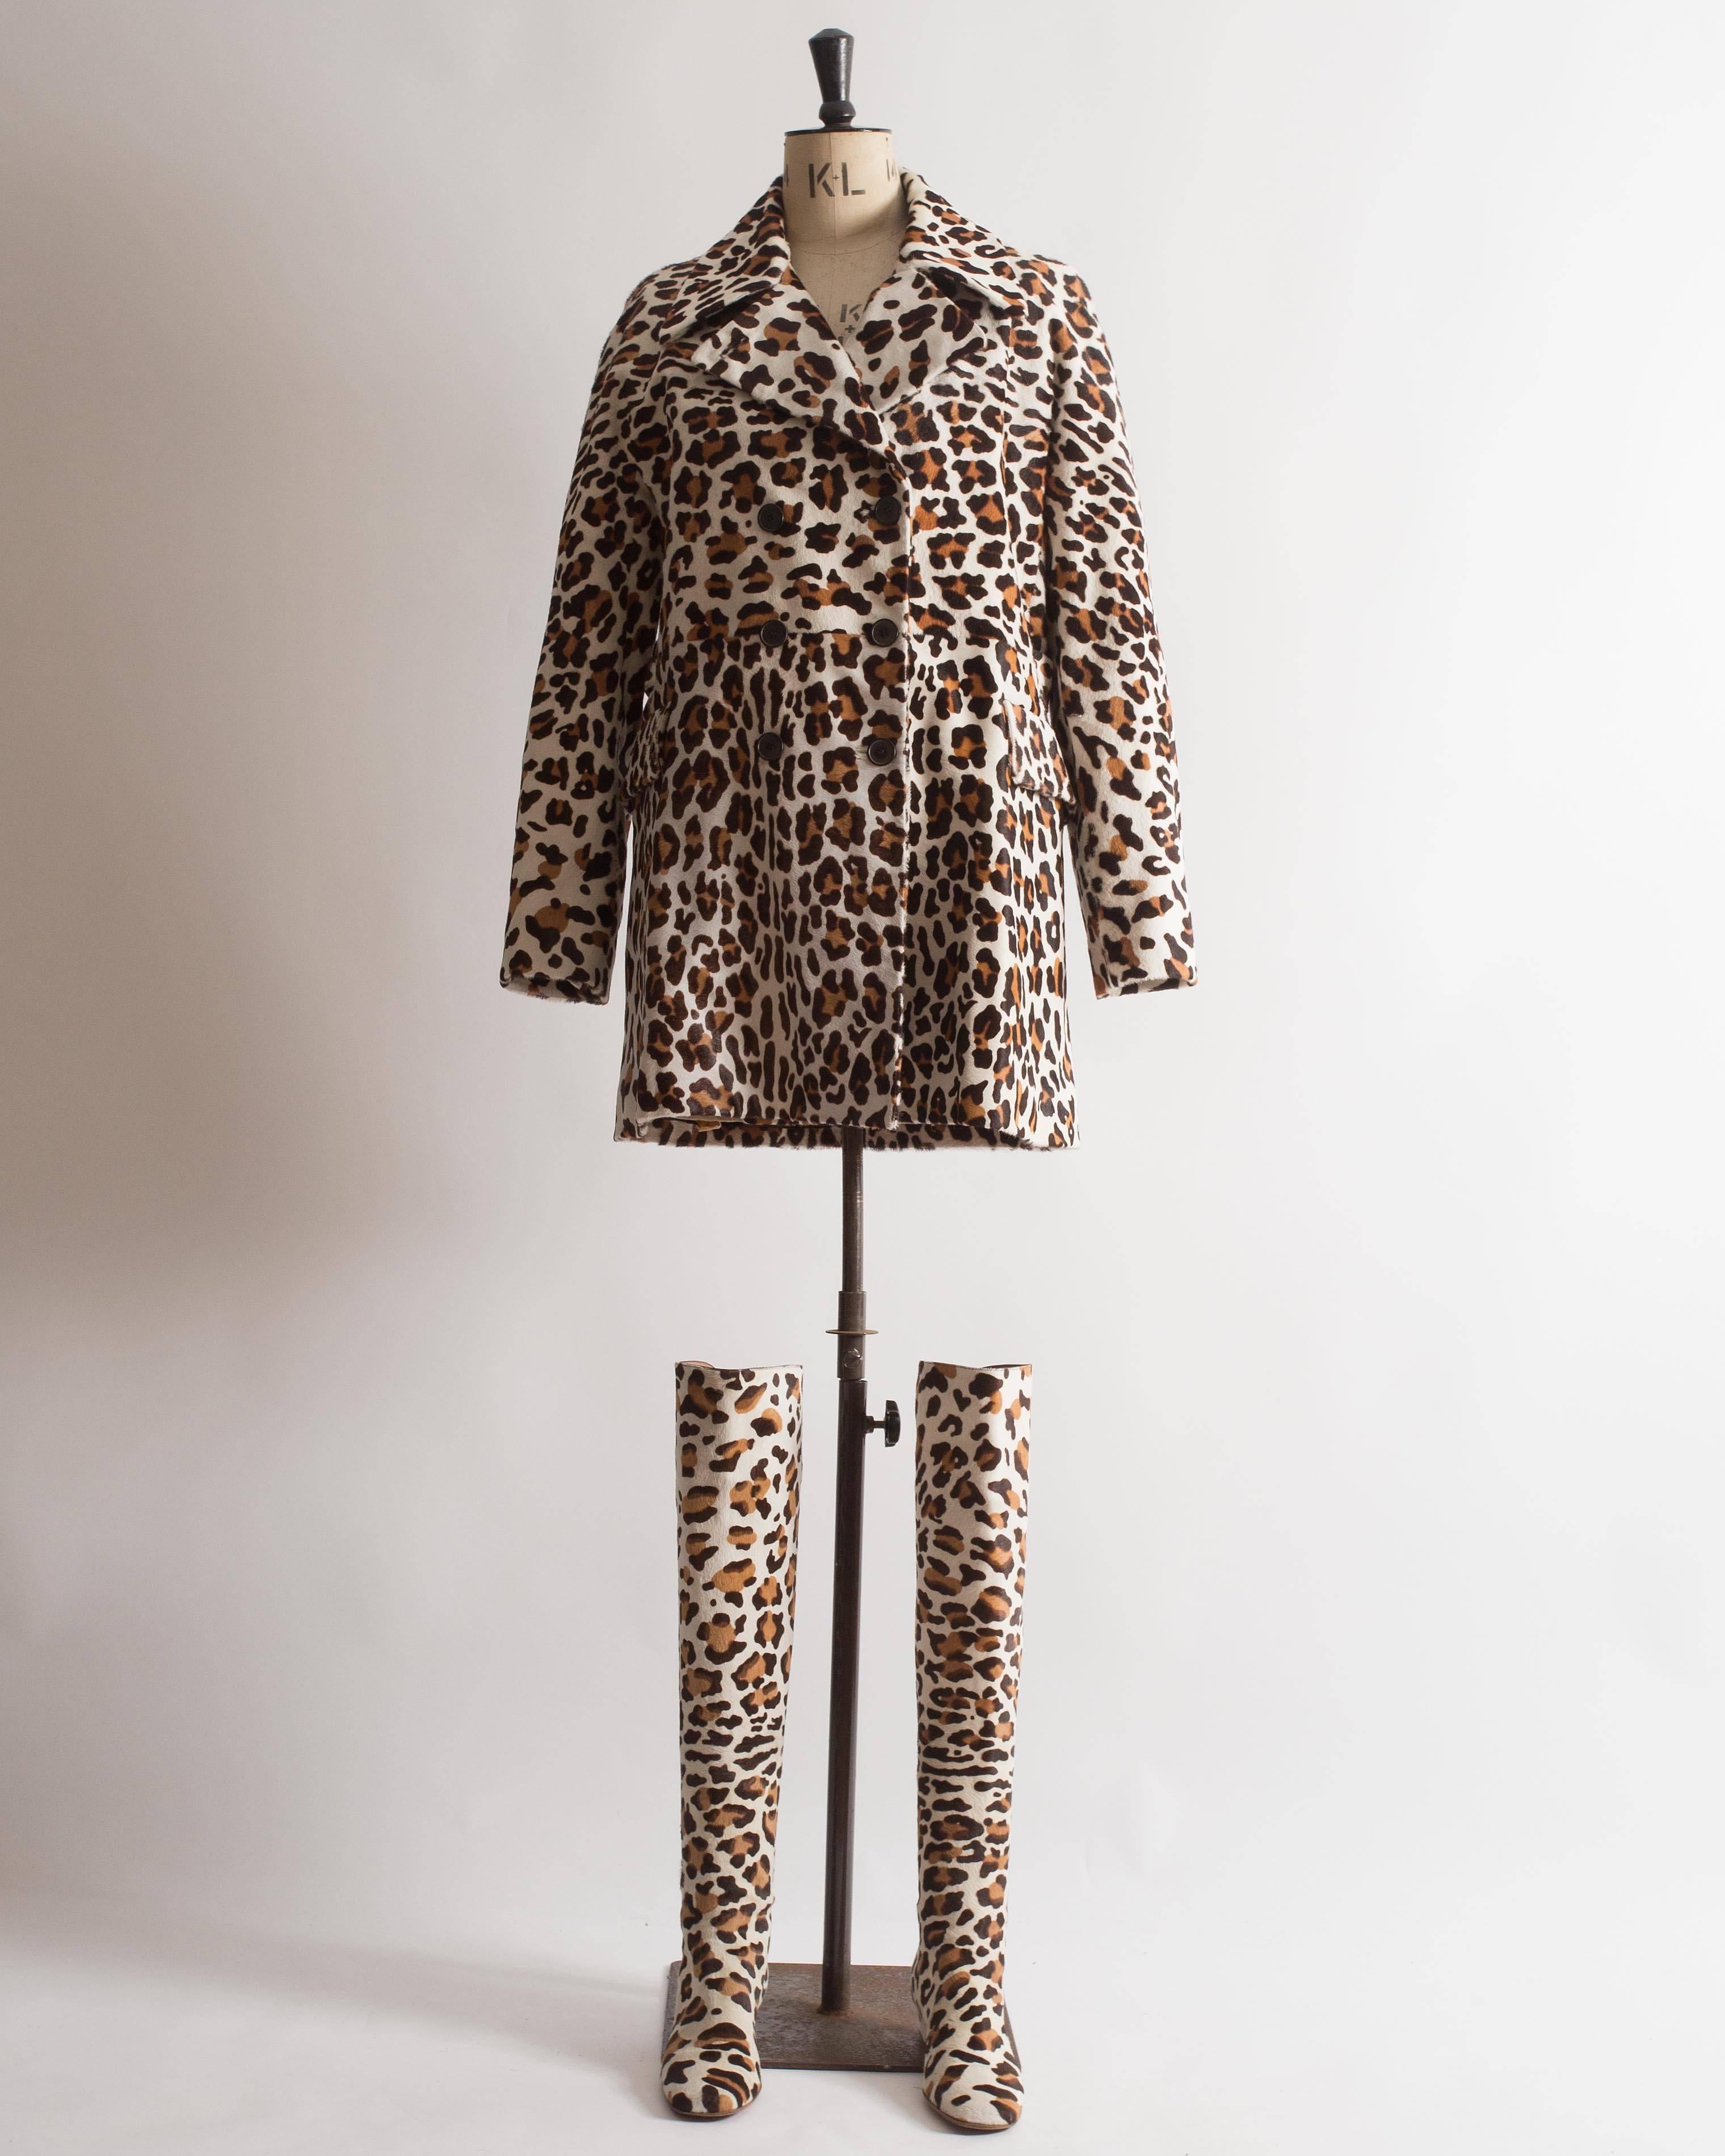 Voici un extraordinaire ensemble manteau et bottes en poils de poney imprimé léopard Alaia, une véritable déclaration de style audacieux et luxueux. Cet ensemble met en valeur la confection impeccable et le design audacieux de la marque.

Le manteau